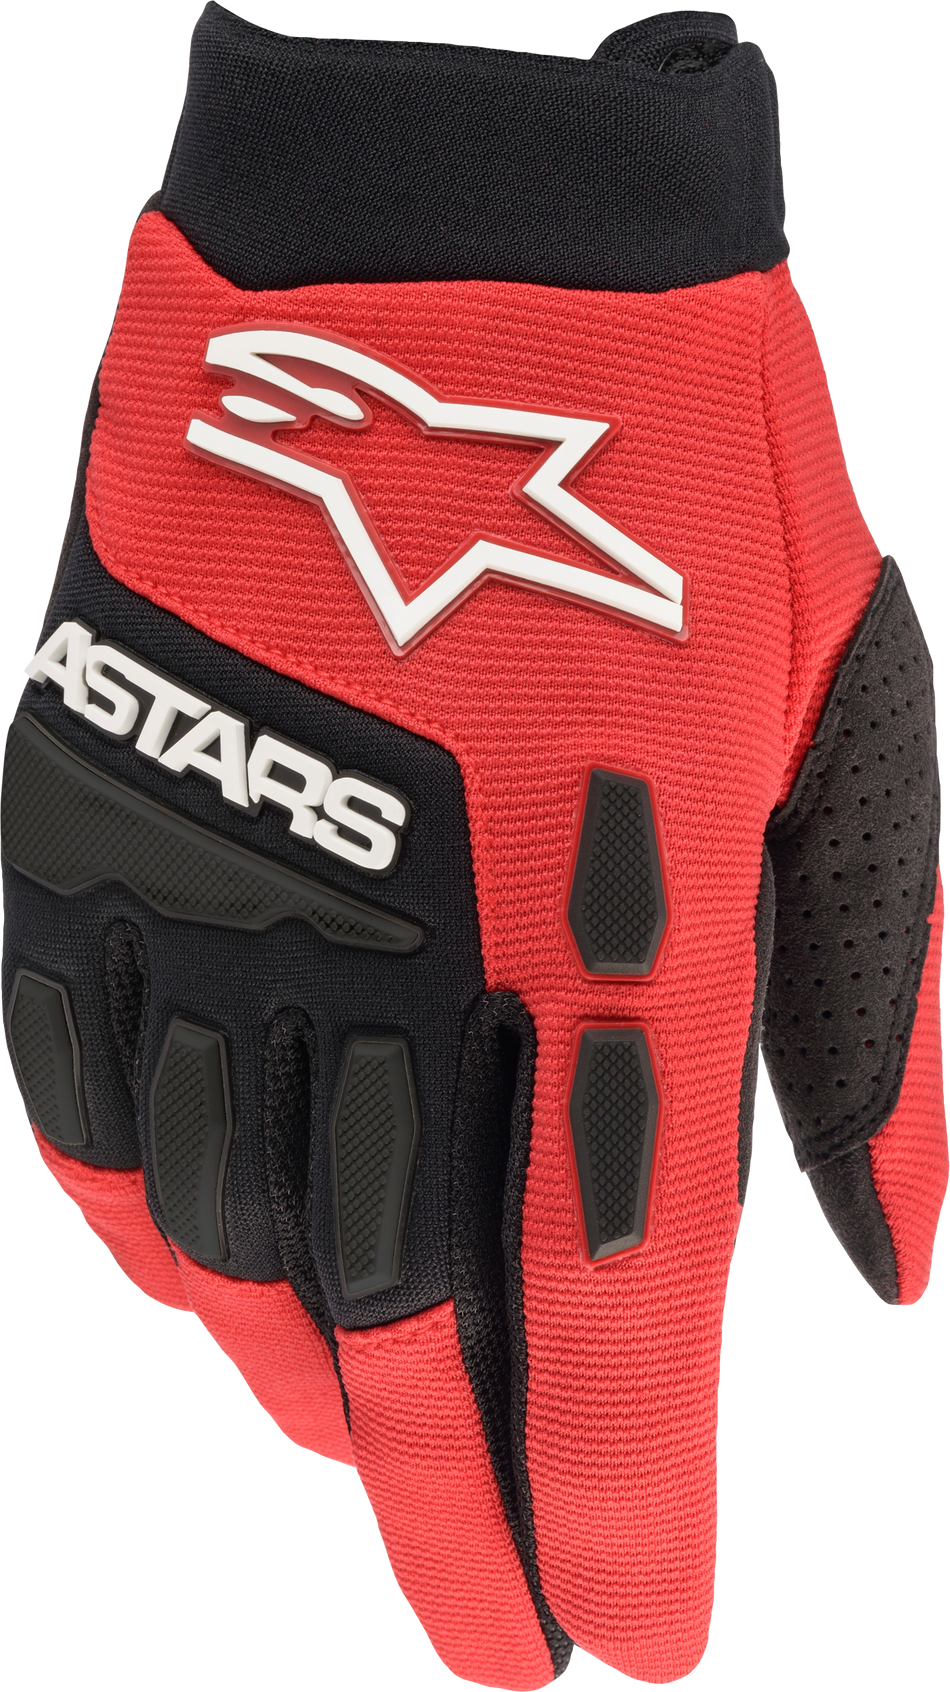 ALPINESTARS Full Bore Gloves Bright Red/Black Md 3563622-3031-M